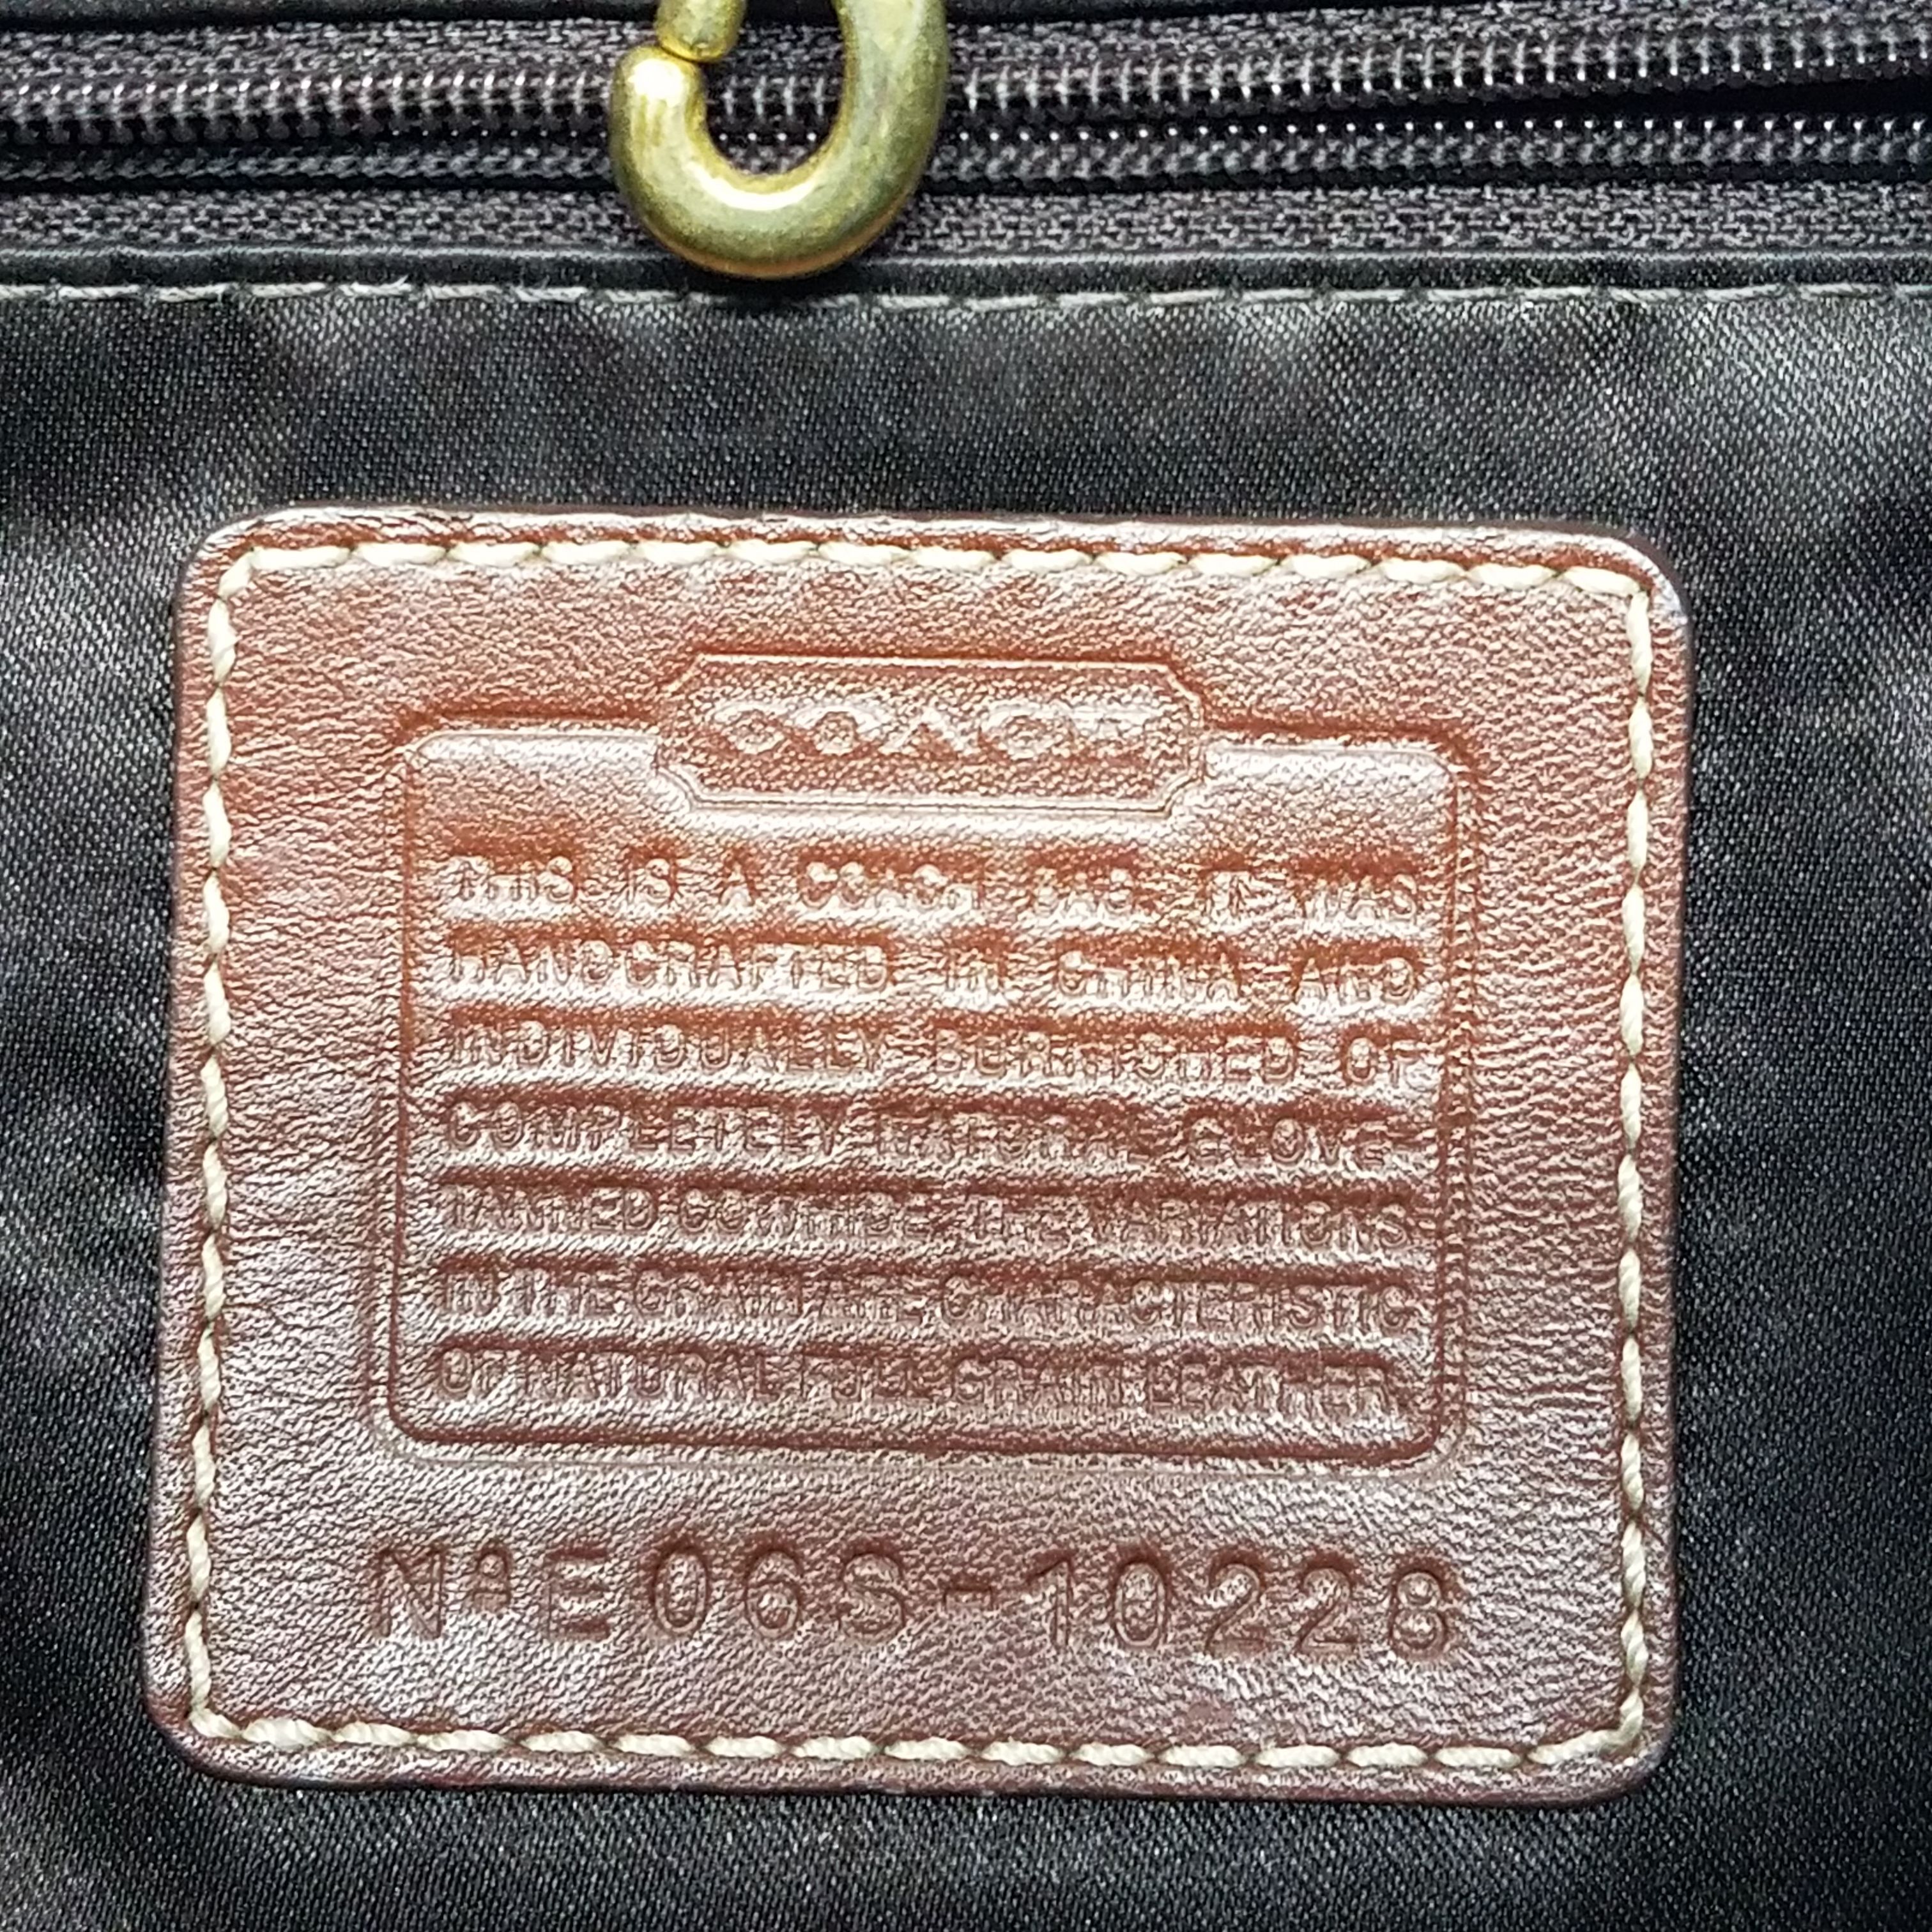 AUTHENTICATE This COACH | Coach vintage handbags, Vintage coach bags,  Vintage designer handbags